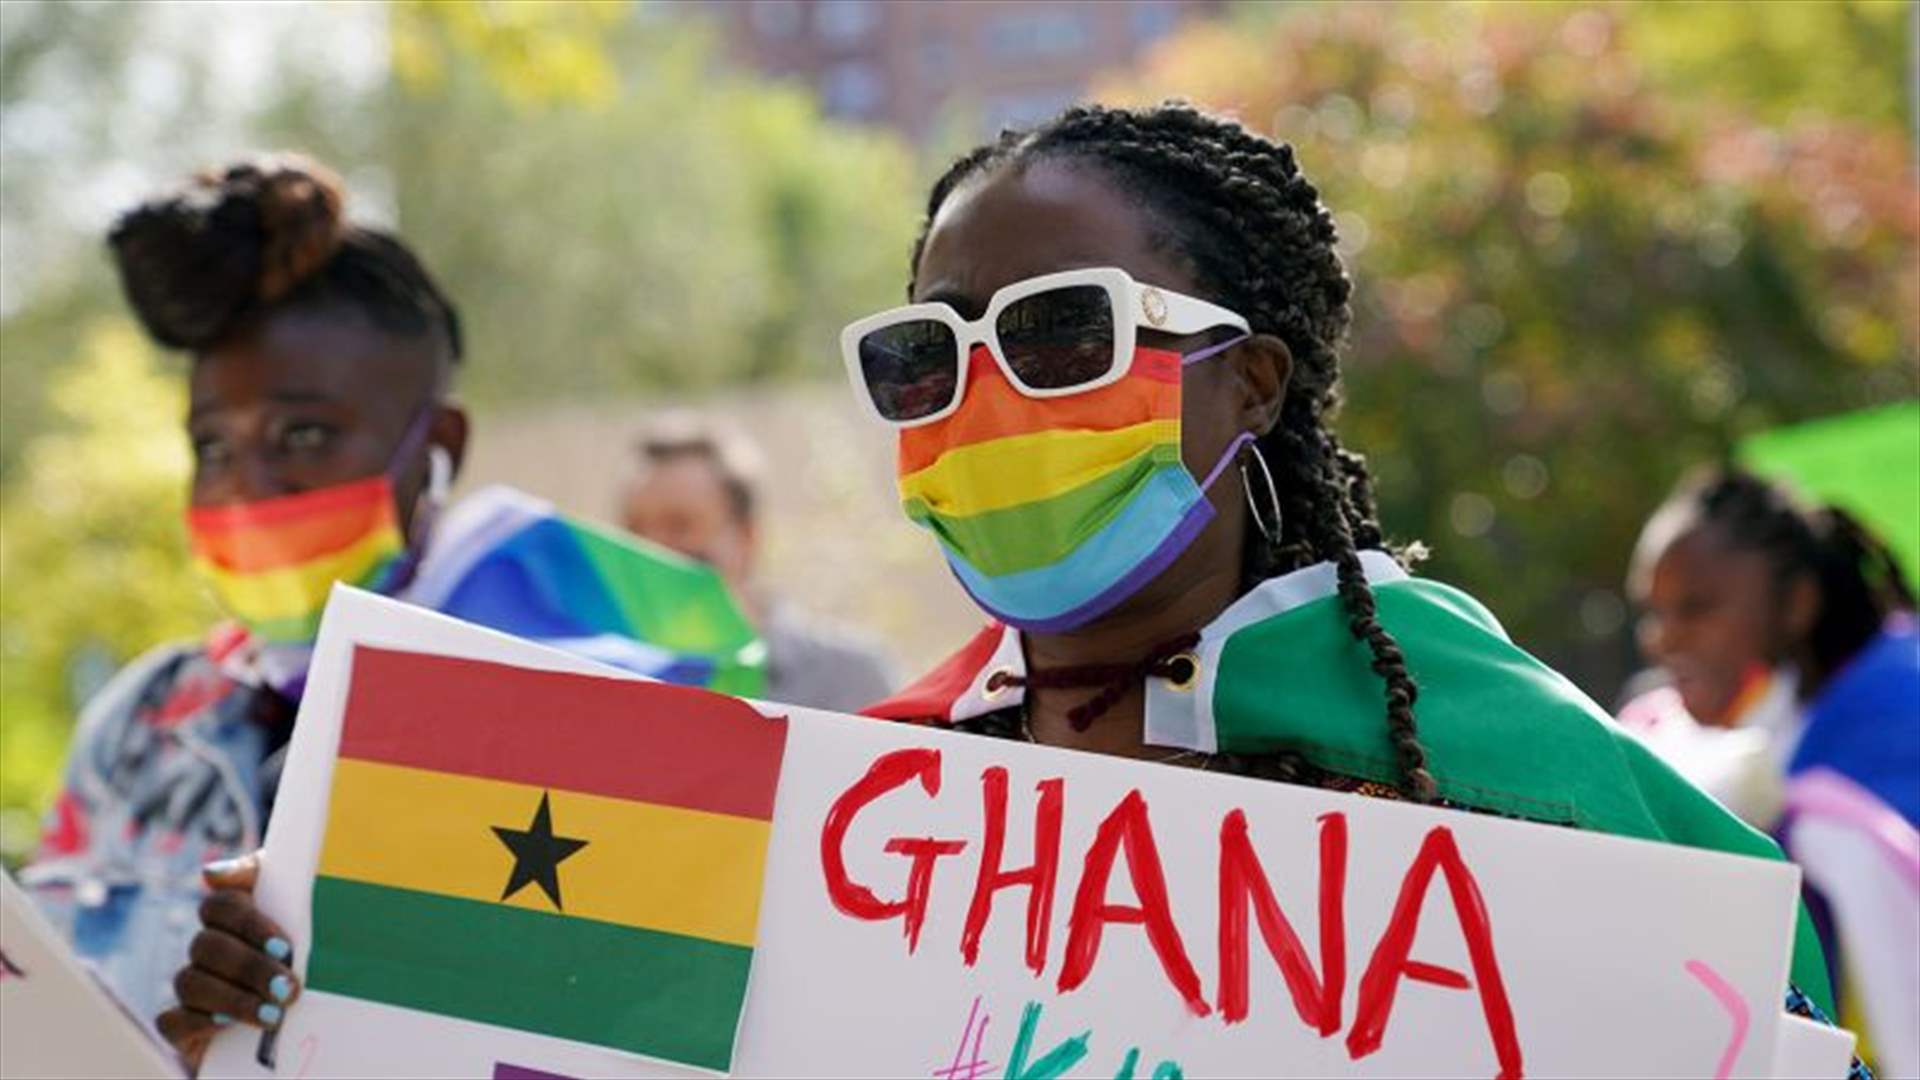 البرلمان الغاني يقر مشروع قانون يقيّد حقوق المثليين